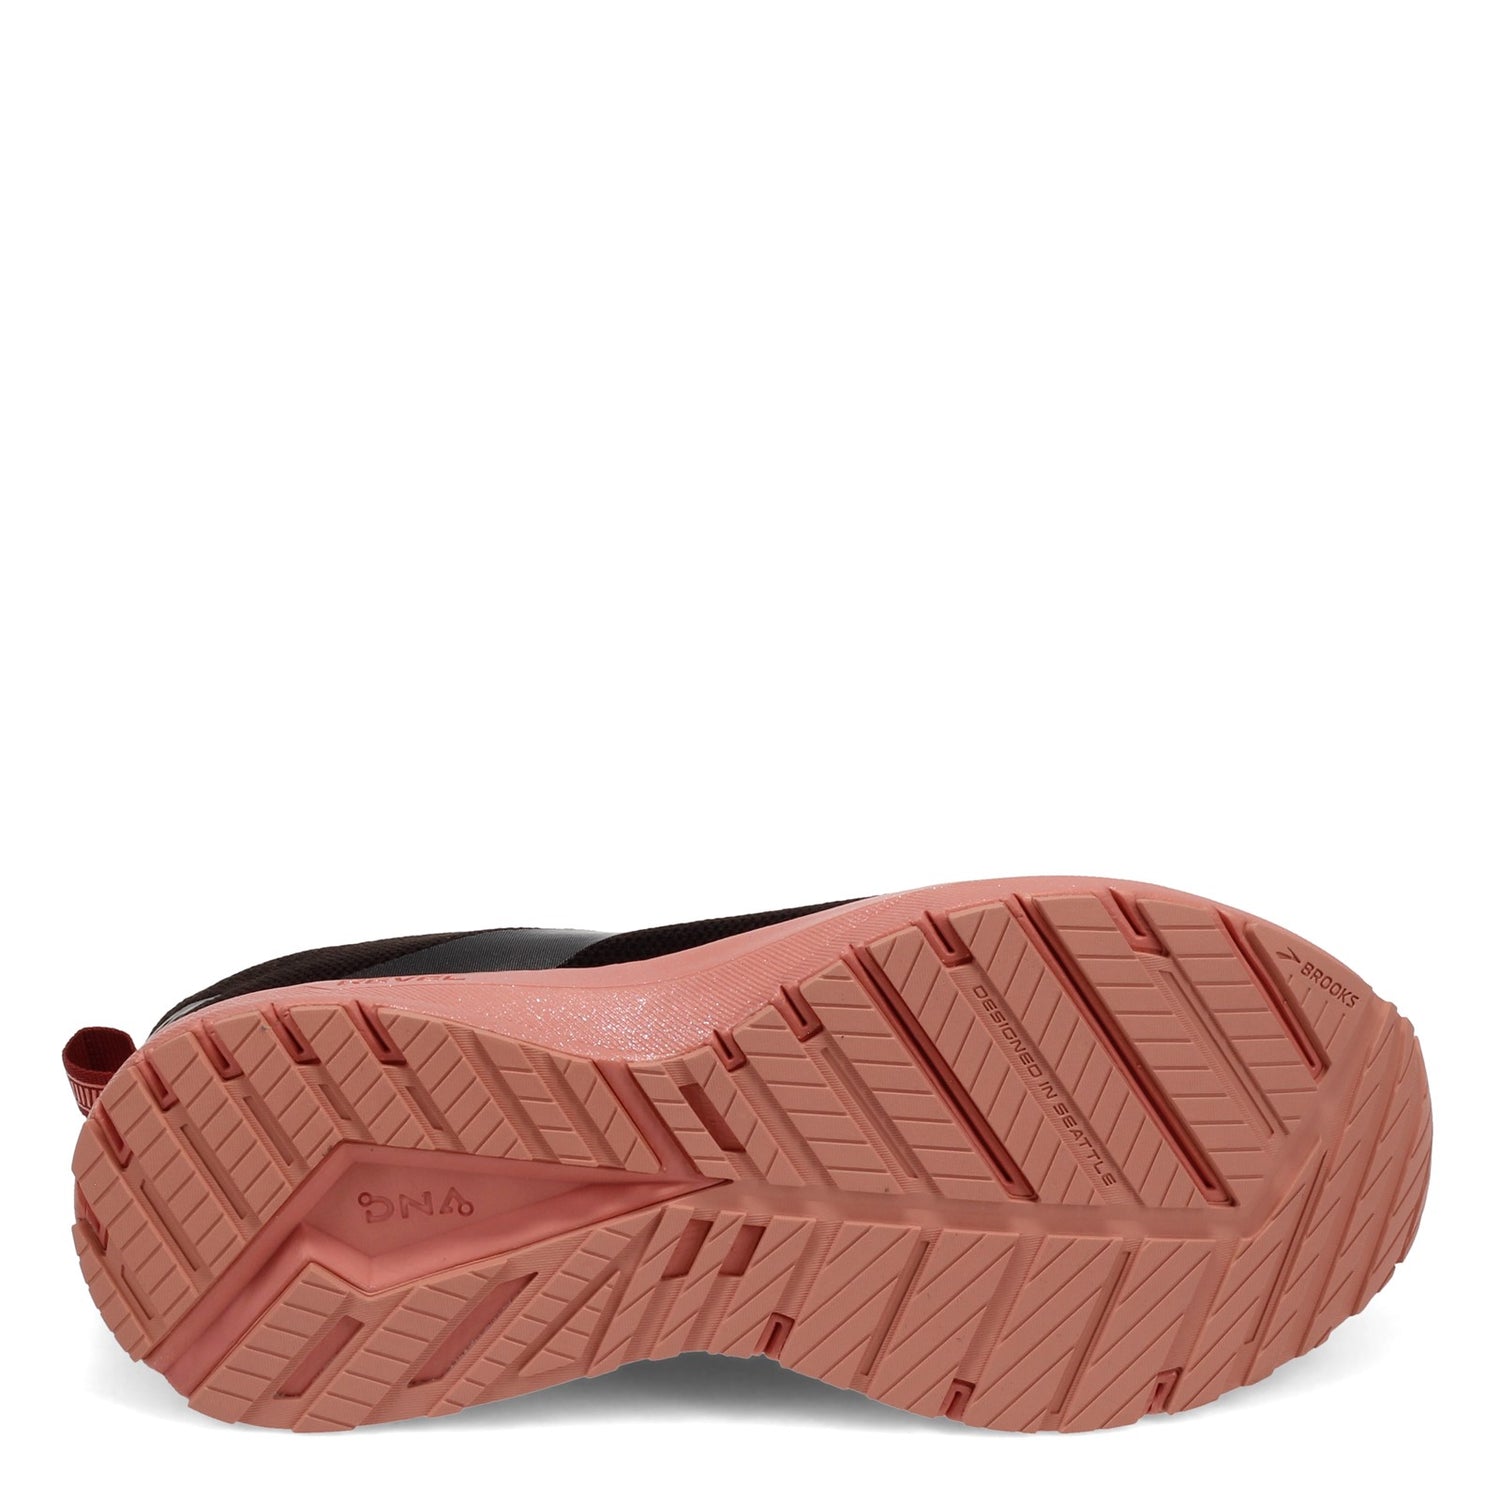 Peltz Shoes  Women's Brooks Revel 4 Running Shoe Black/Marsala/Lobster 120337 1B 024